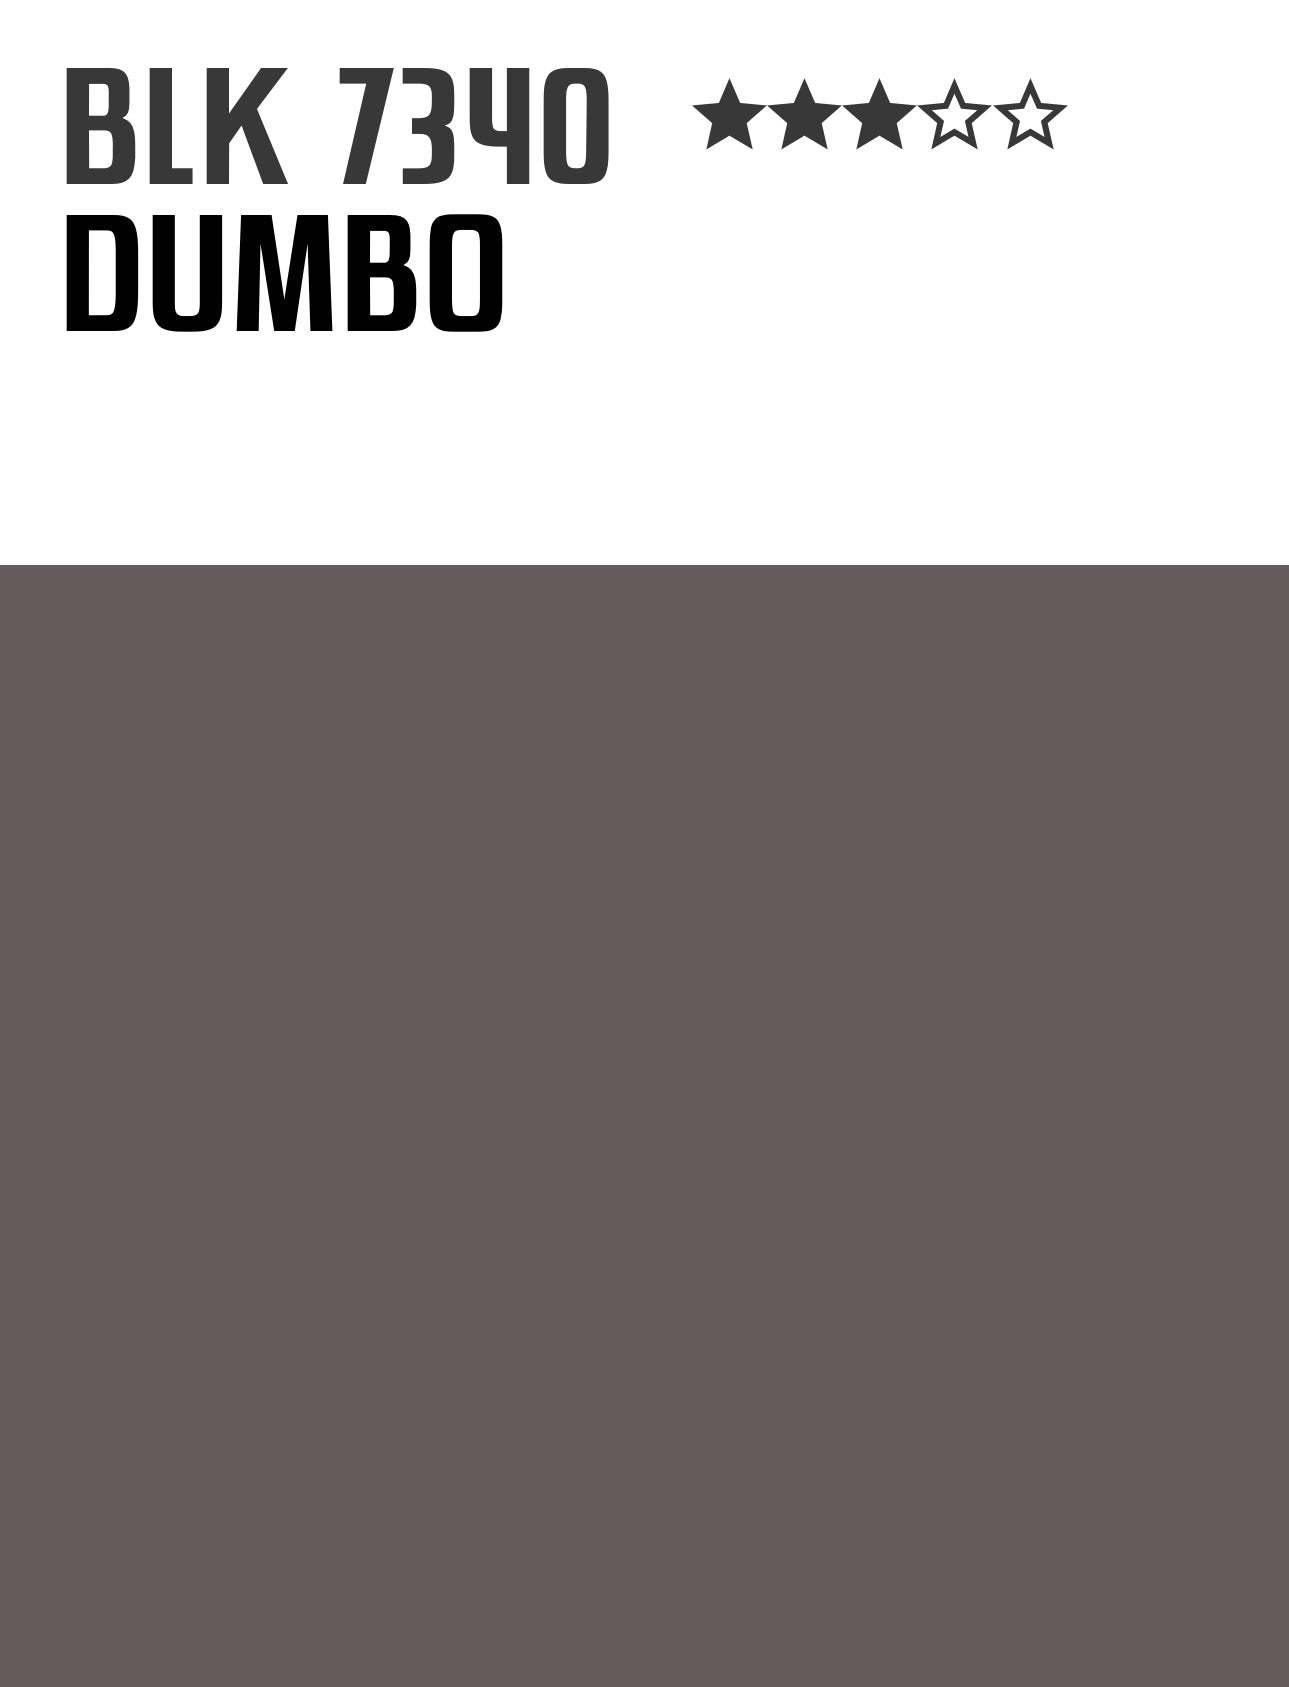 dumbo-montanablack